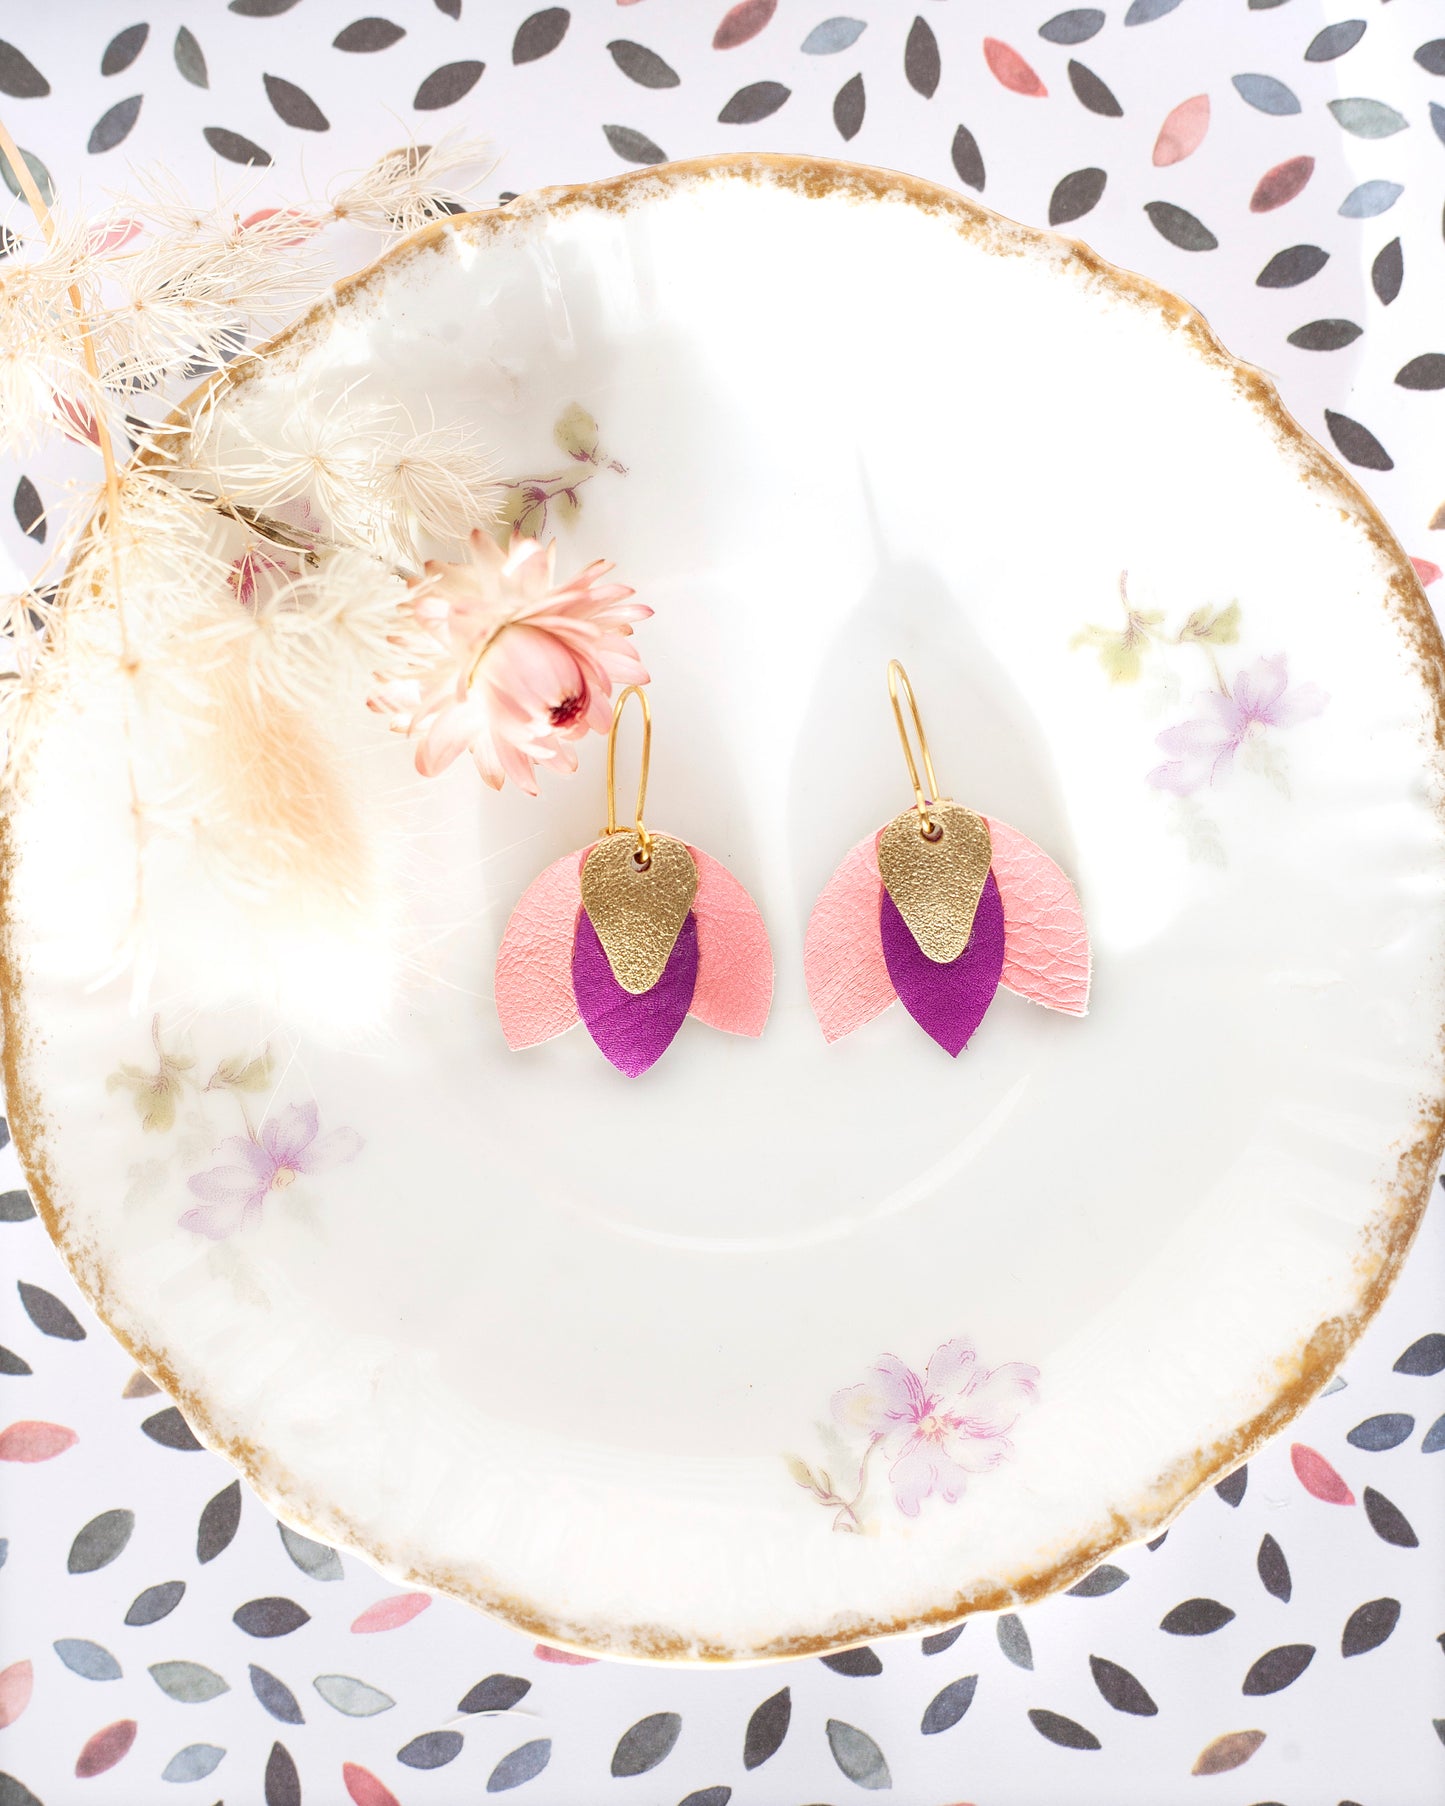 Boucles d'oreilles fleur "Hibiscus" en cuir doré rose et violet